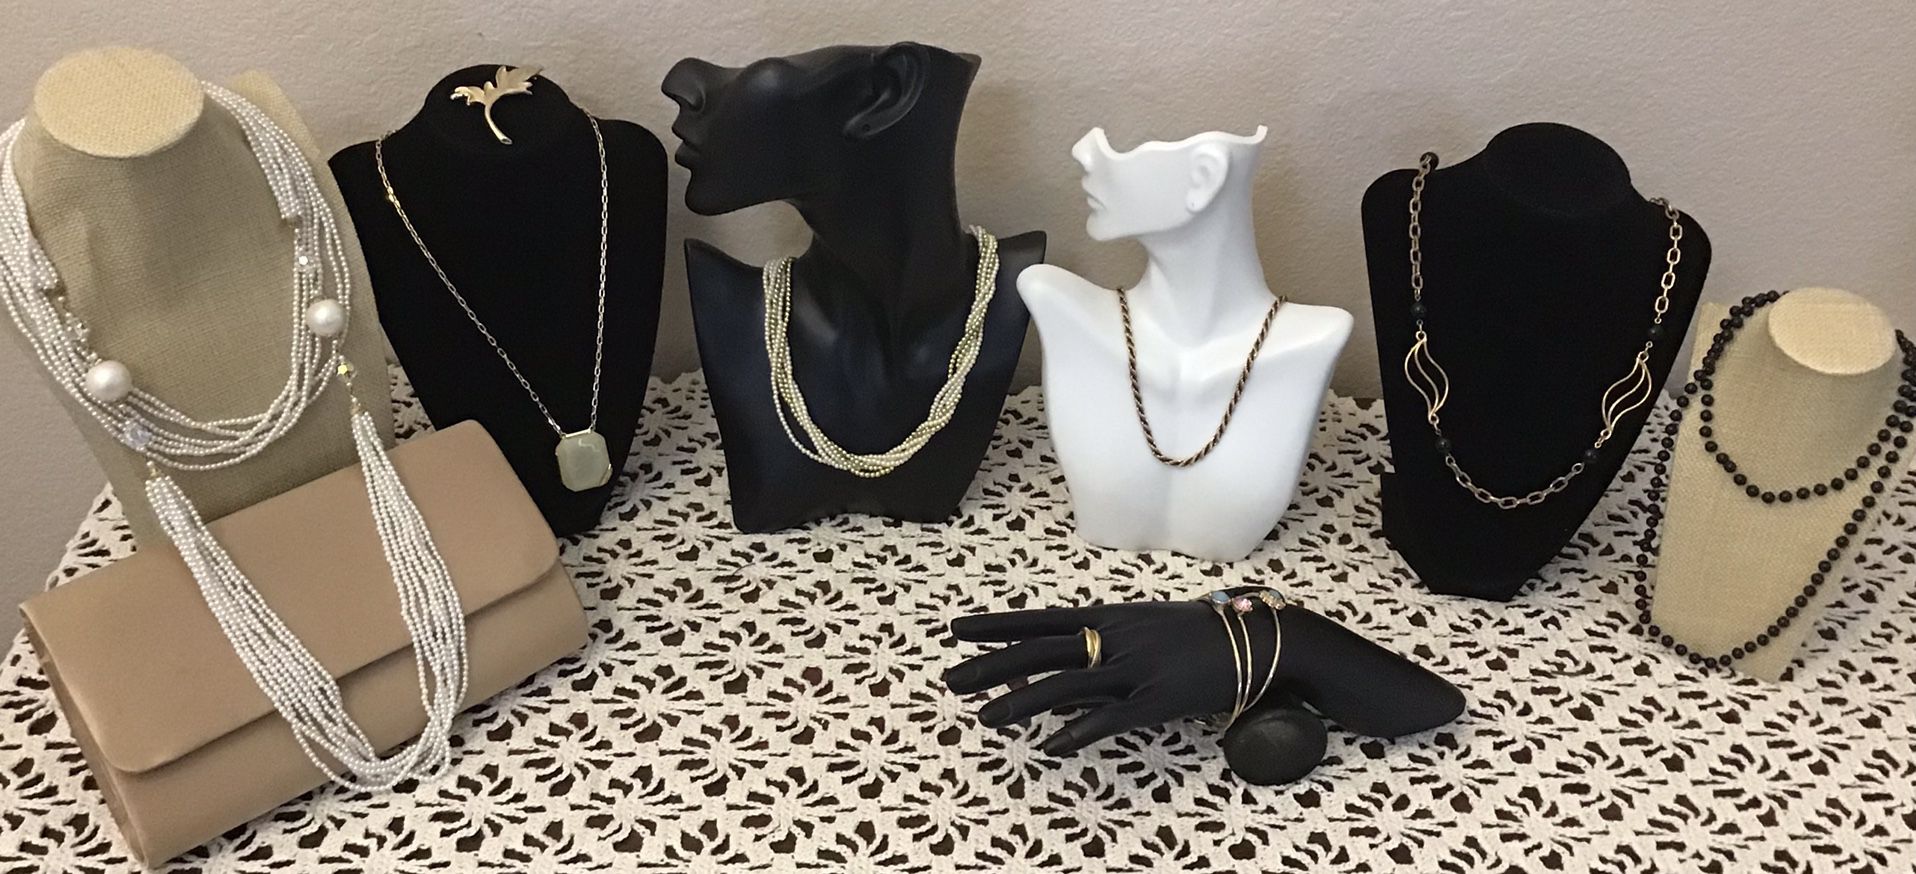 NWOT & EUC Beautiful Vintage and Fashion Handbag, Necklaces, Bracelets, Ring & Pin Set. Lot. Lote de Joyas Antiguas en Excelente Condición 